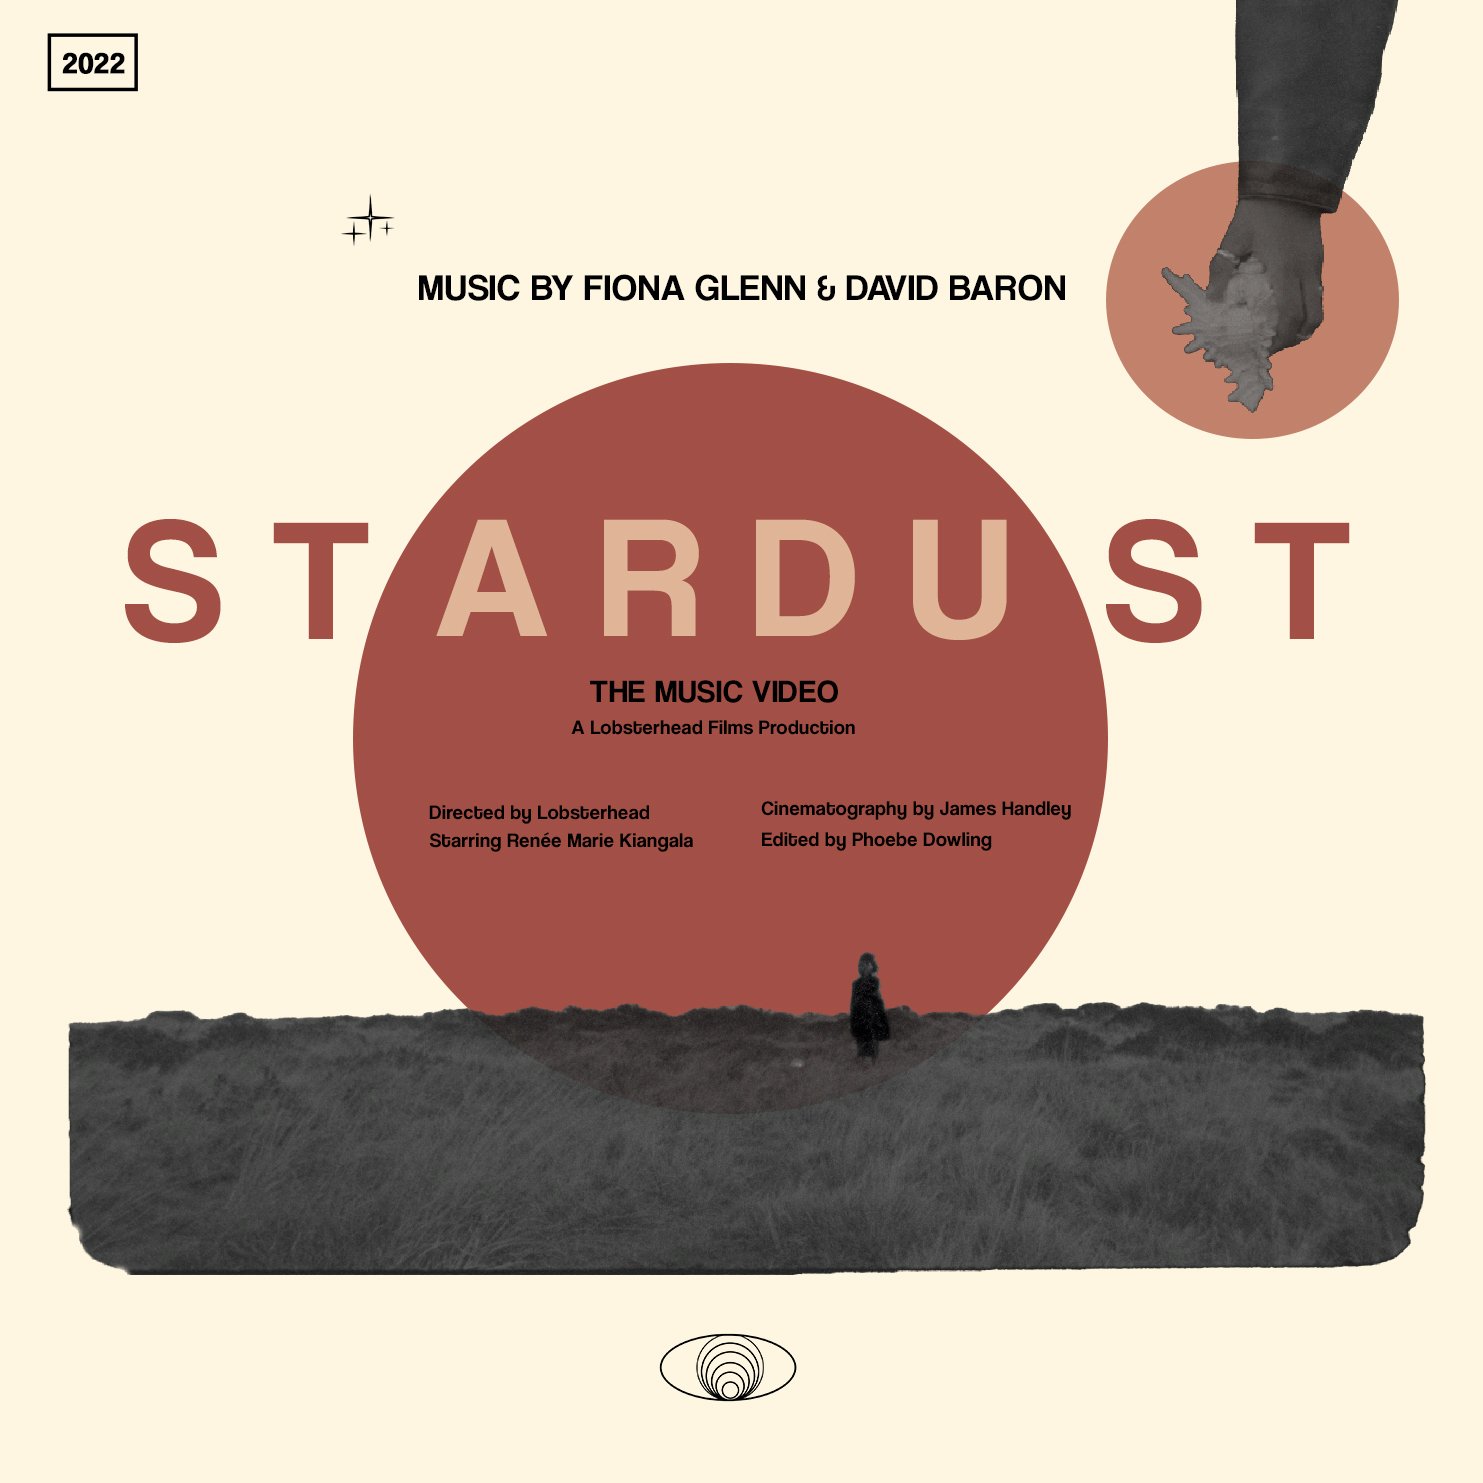 Stardust poster 4 .jpg